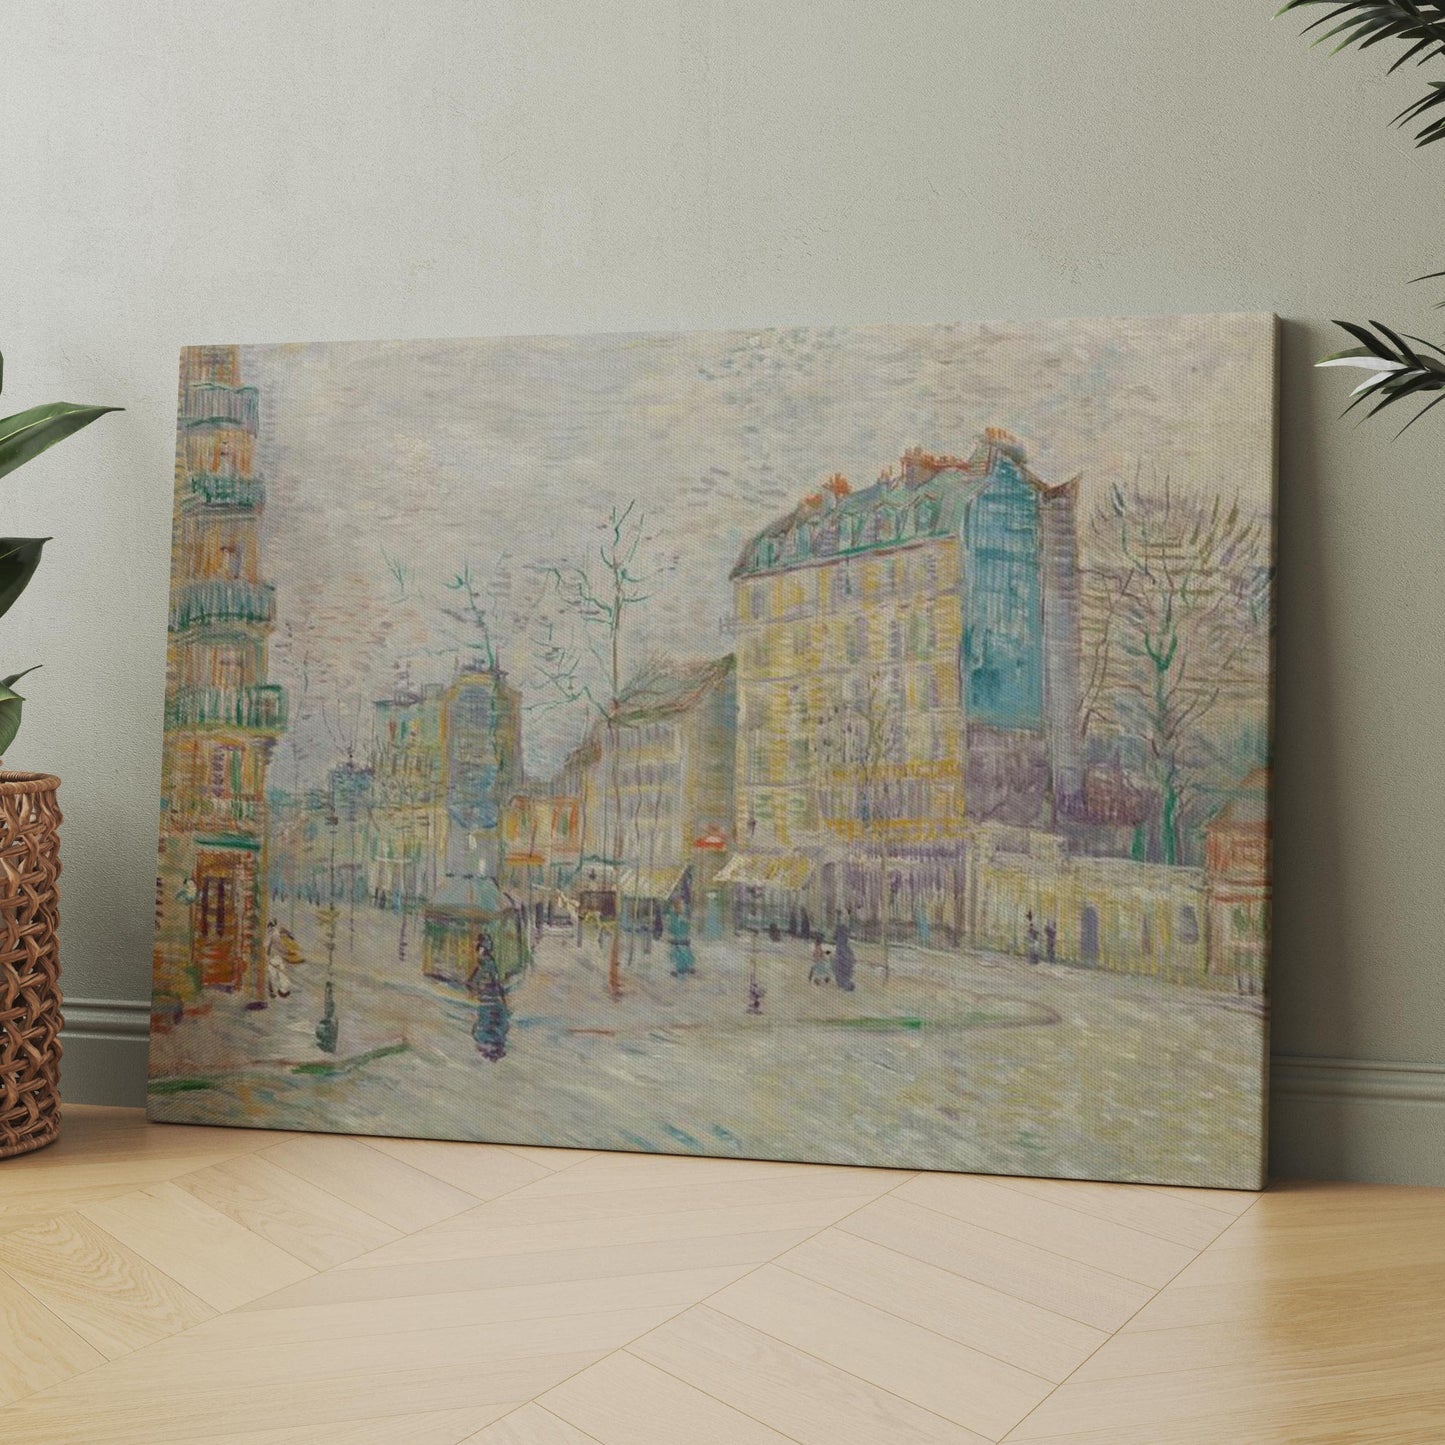 Boulevard de Clichy (1887) by Van Gogh